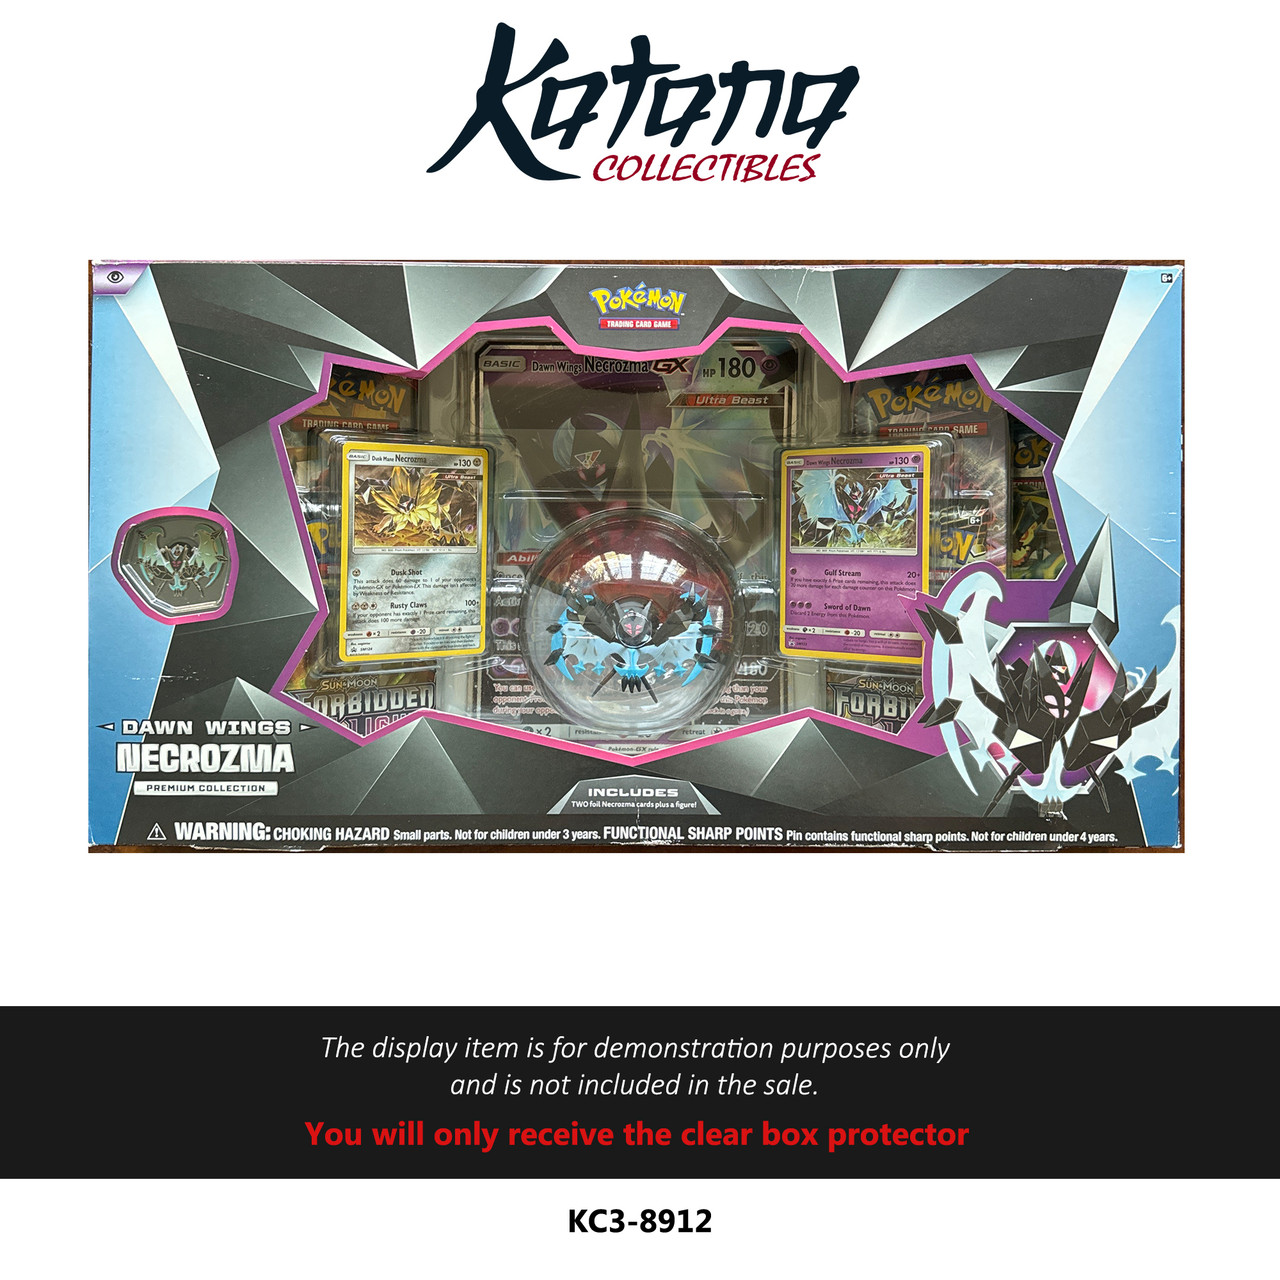 Katana Collectibles Protector For Pokemon Necrozma Premium Collection